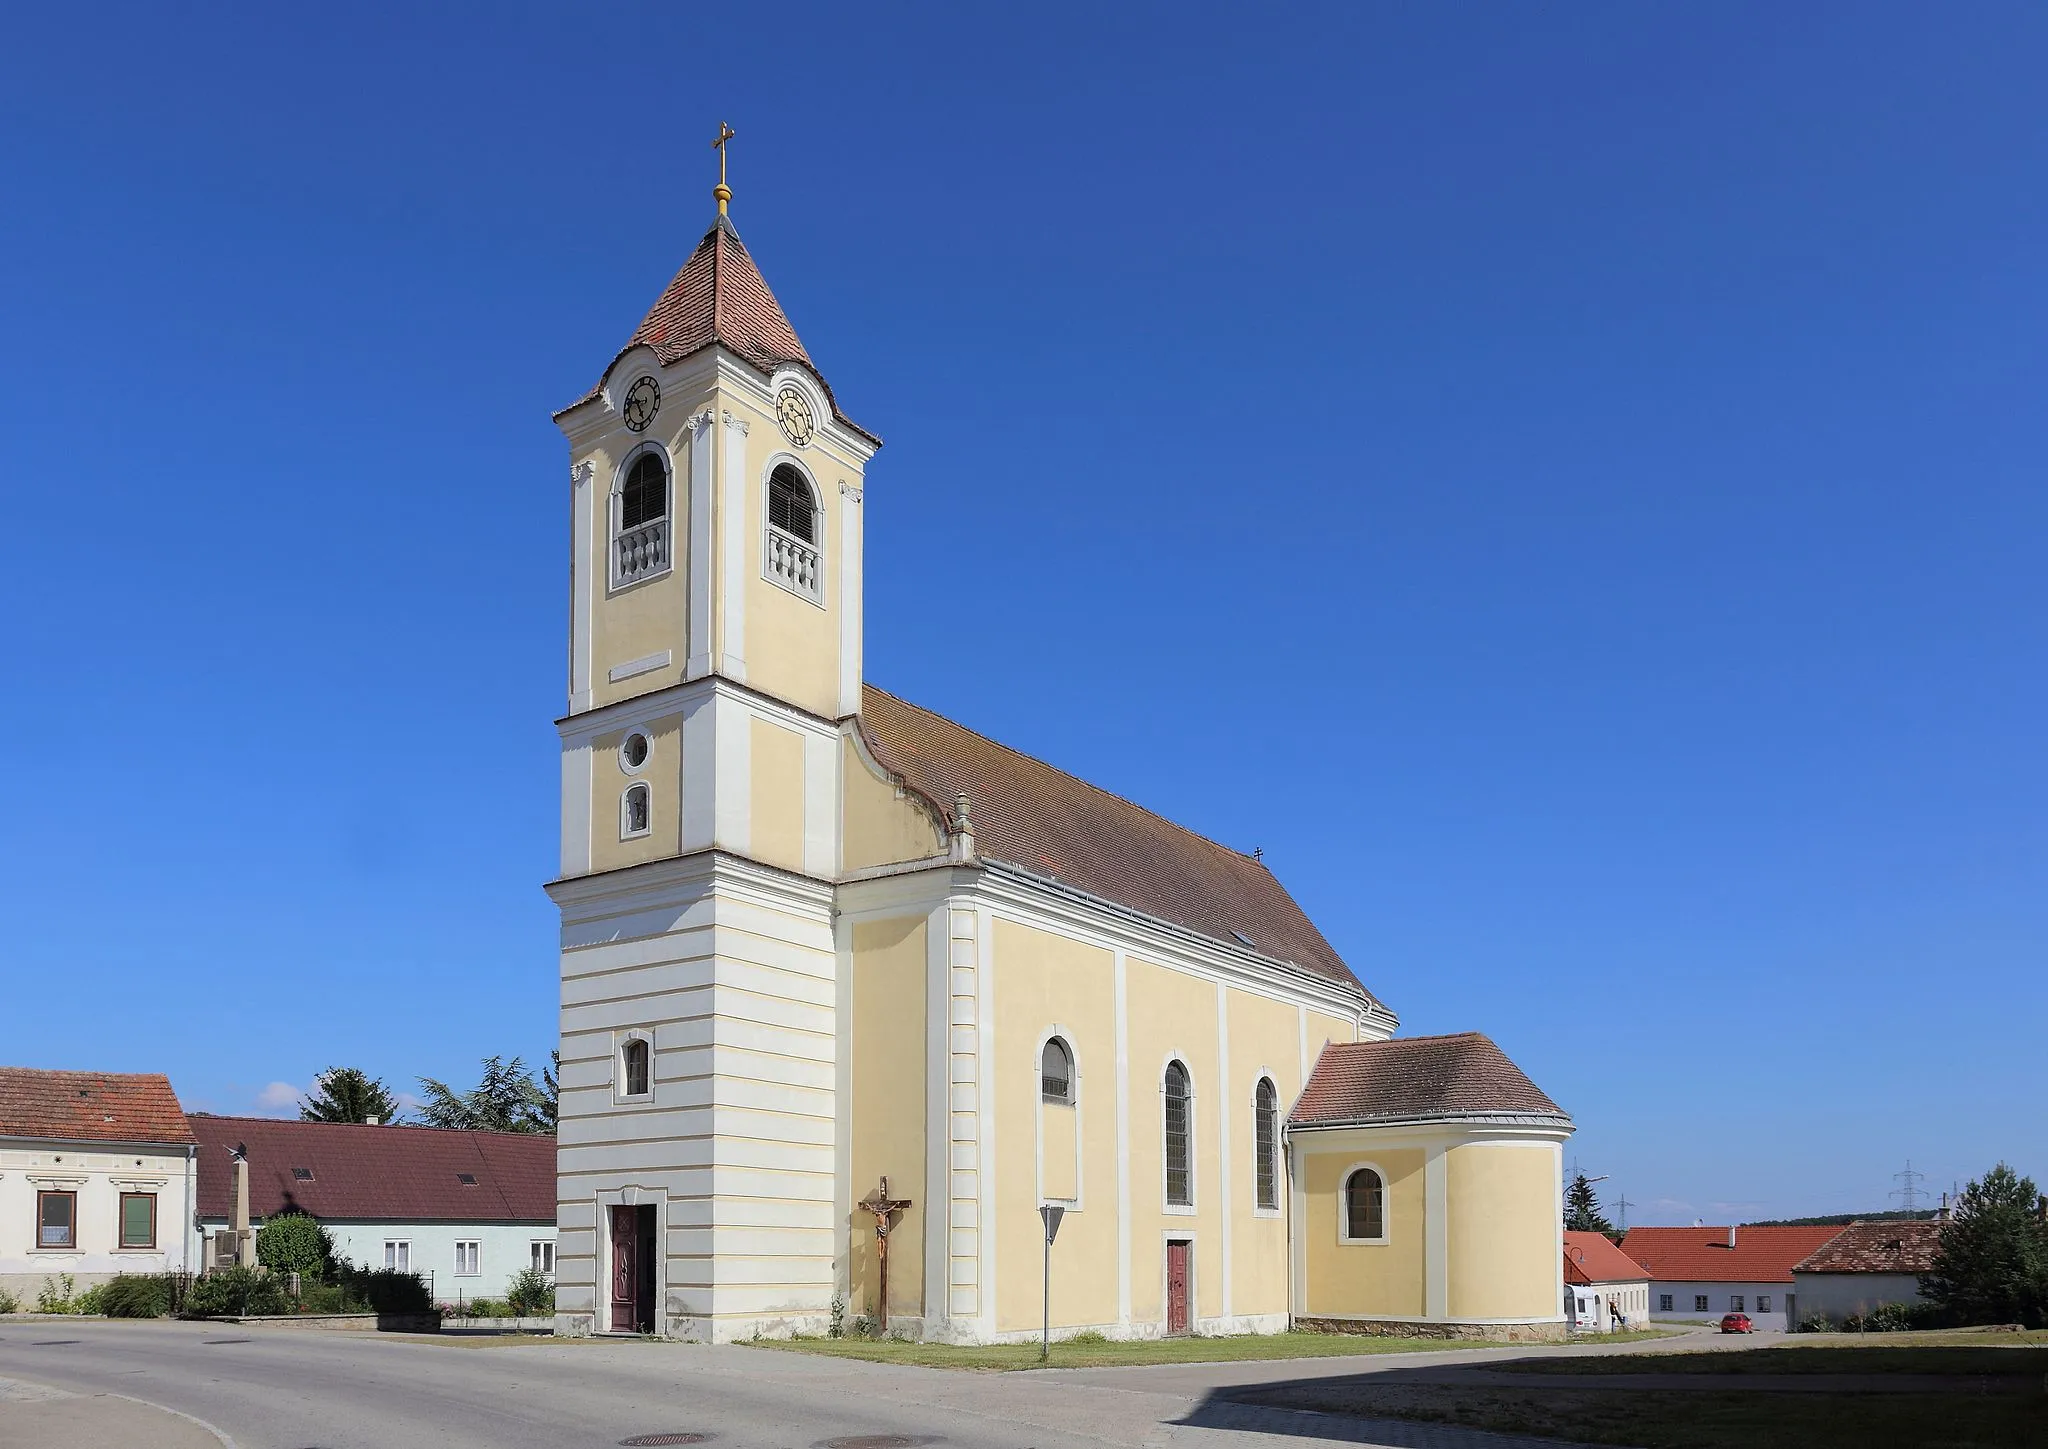 Photo showing: Katholische Pfarrkirche hl. Kreuz in Grafenberg, ein Ortsteil der niederösterreichischen Gemeinde Straning-Grafenberg. Dieses klassizistische Bauwerk wurde 1801 errichtet.